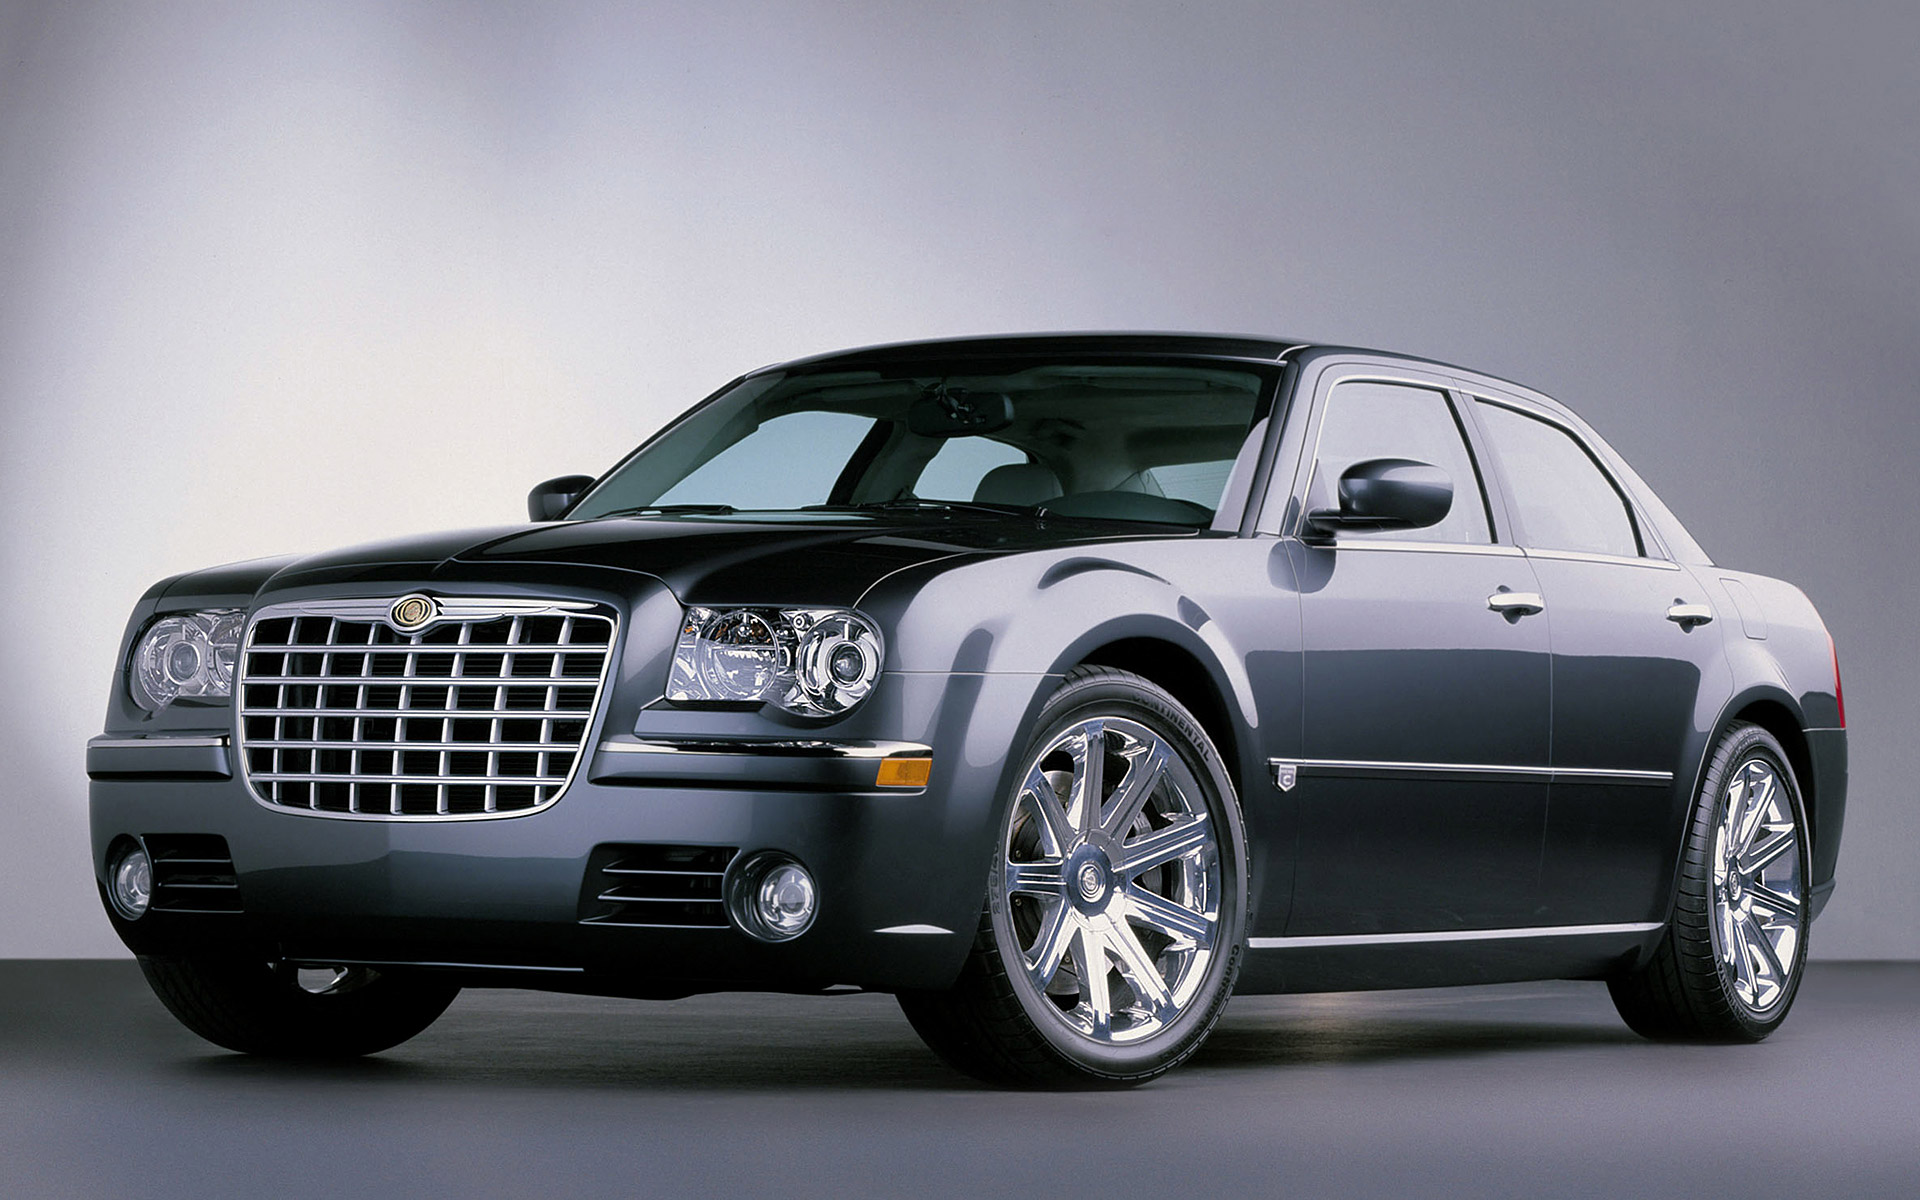  2003 Chrysler 300C Concept= Wallpaper.